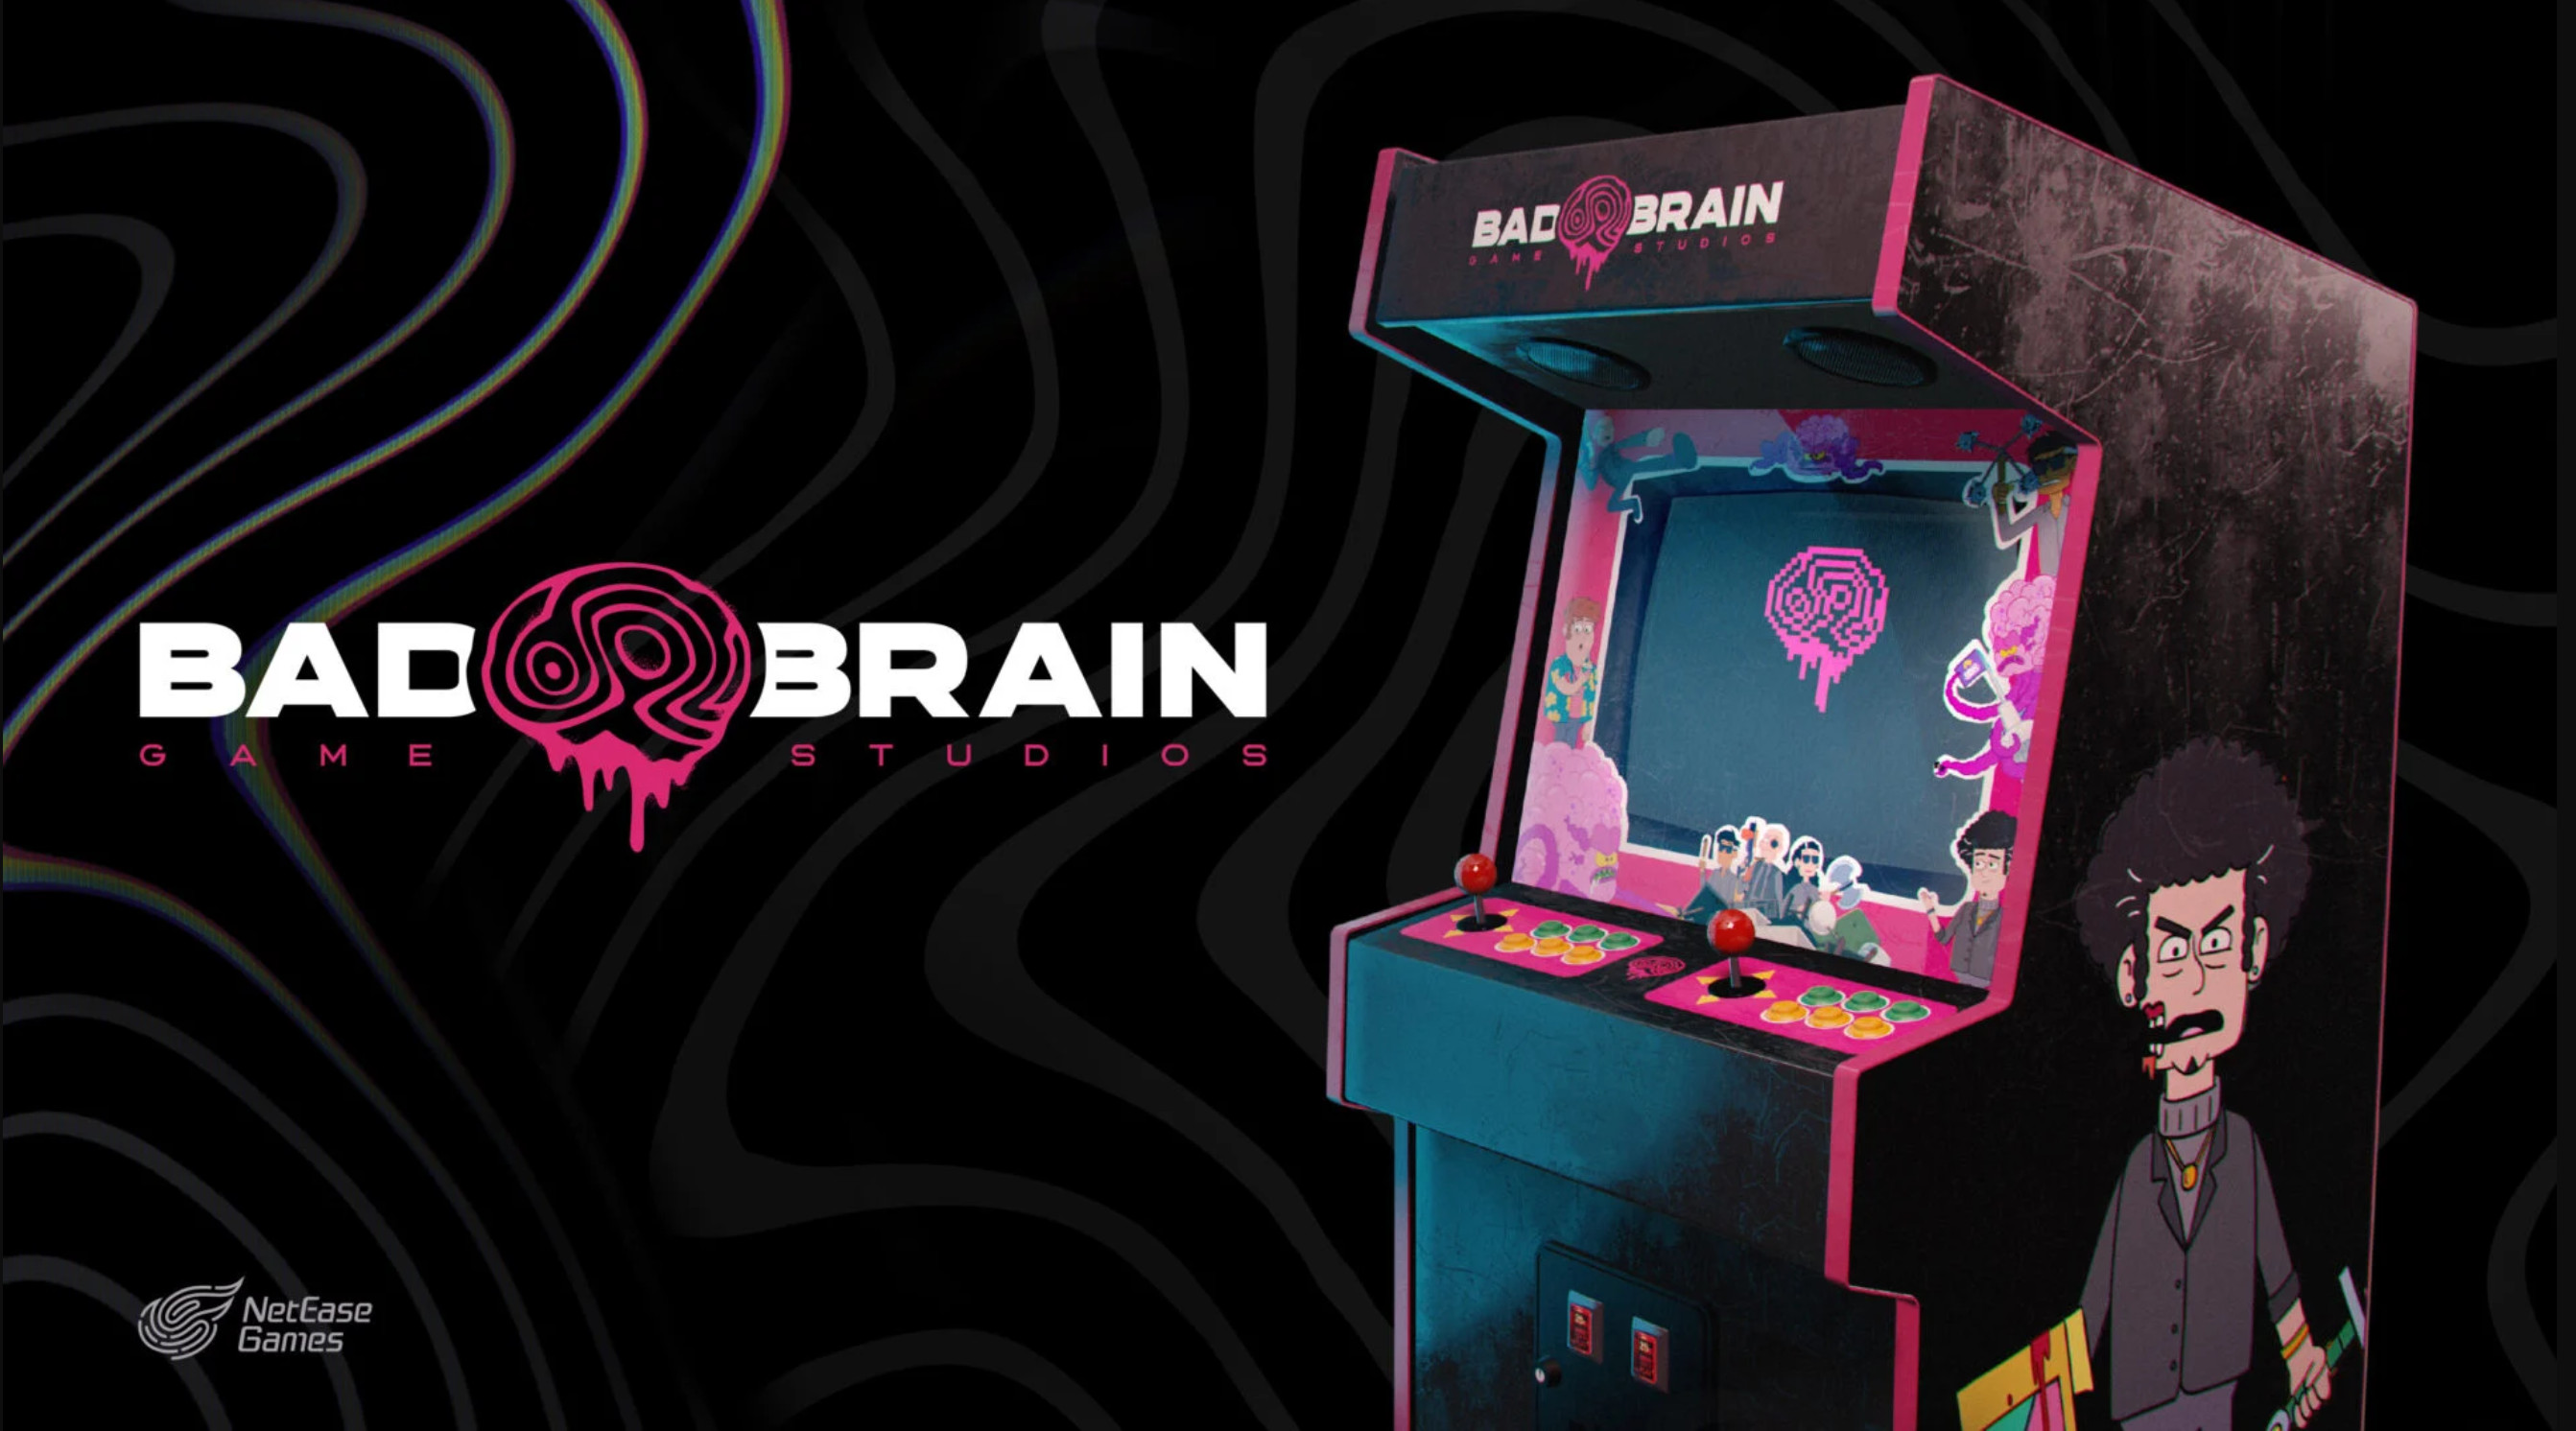 网易又在海外成立了一个工作室Bad Brain Games 育碧老兵领导